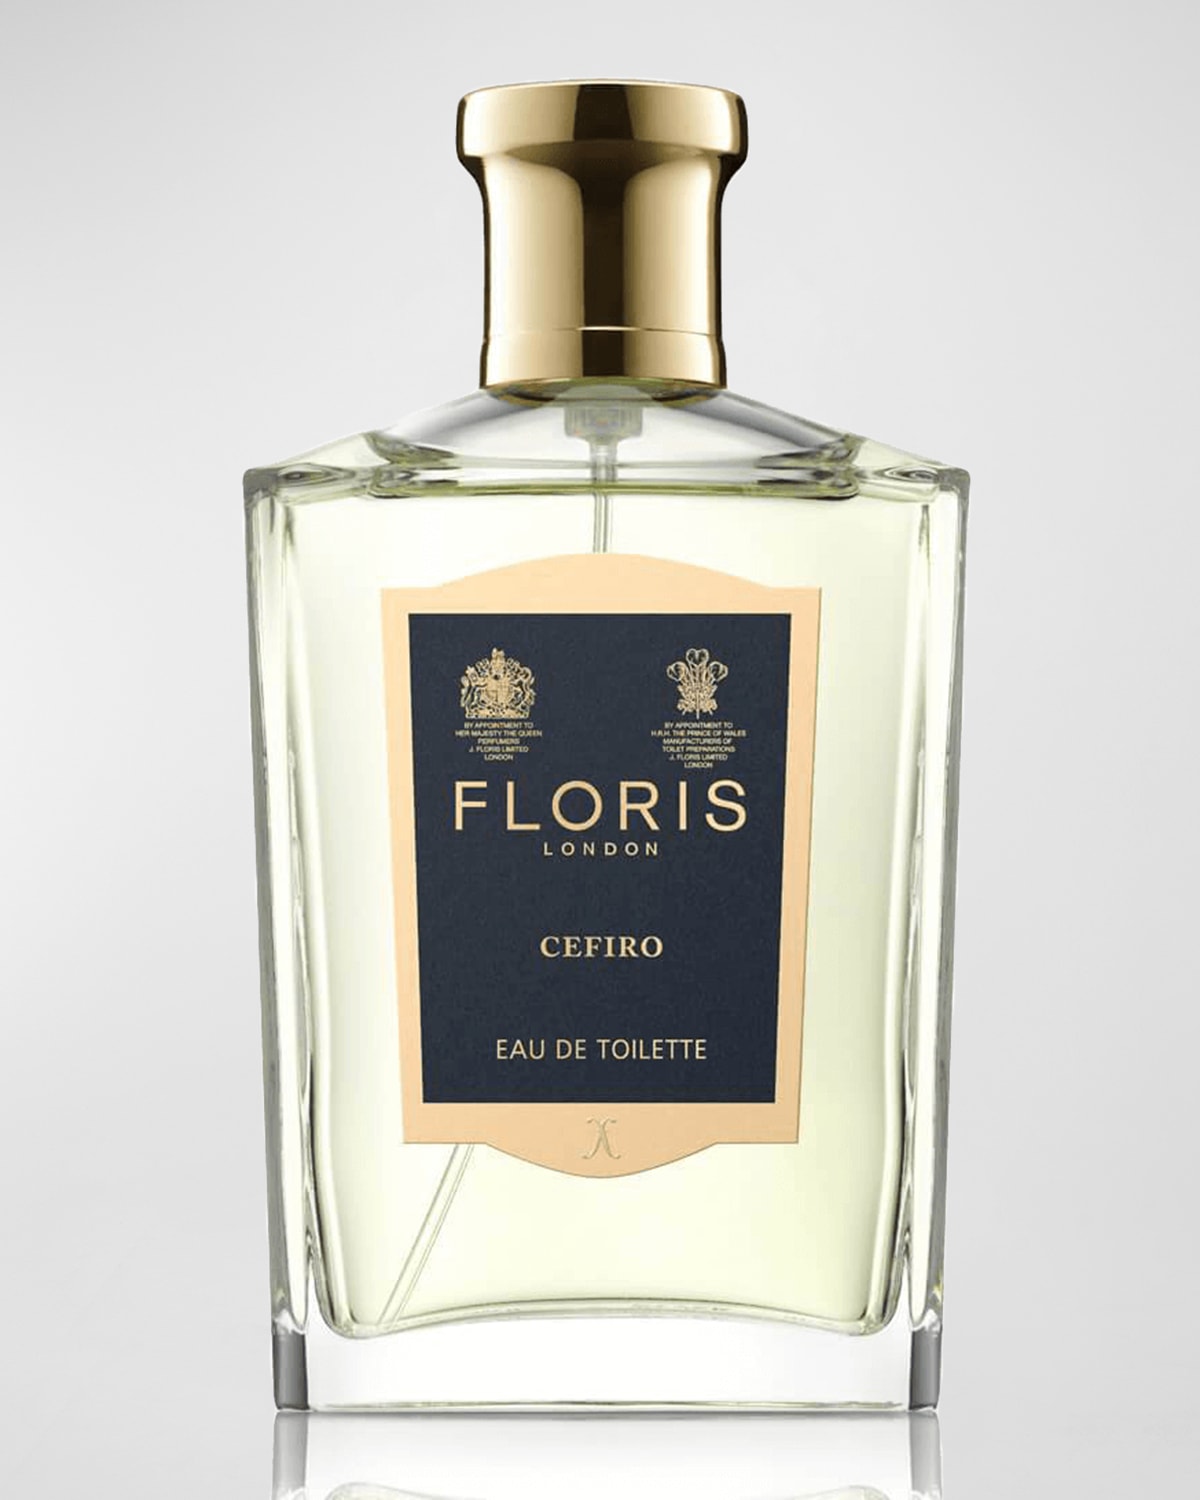 Floris London Cefiro Eau de Toilette, 3.4 oz.